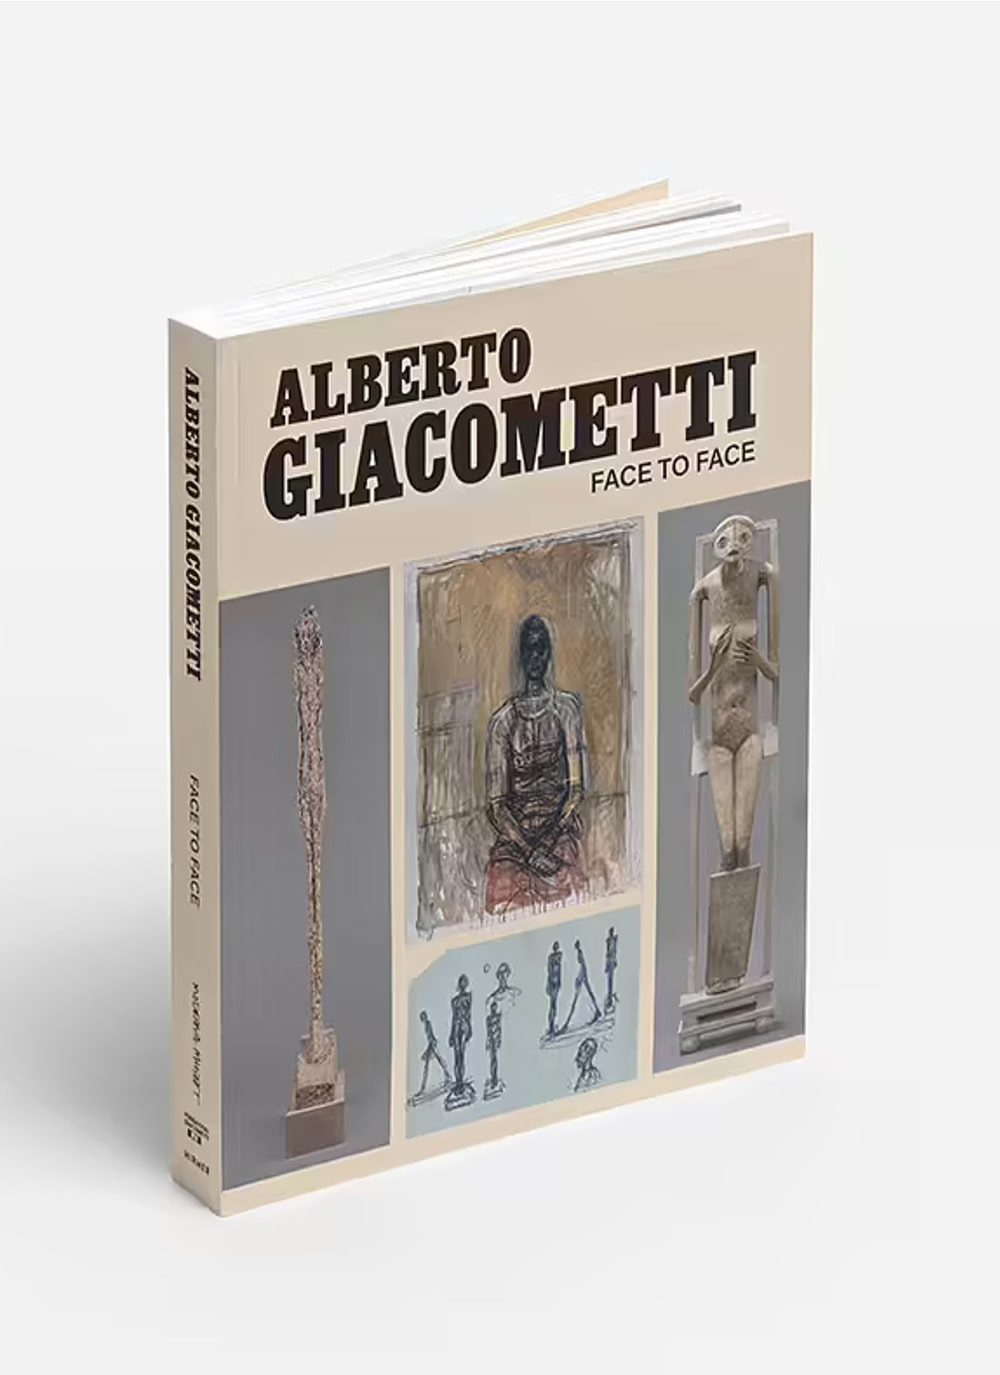 Alberto Giacometti, Face to face